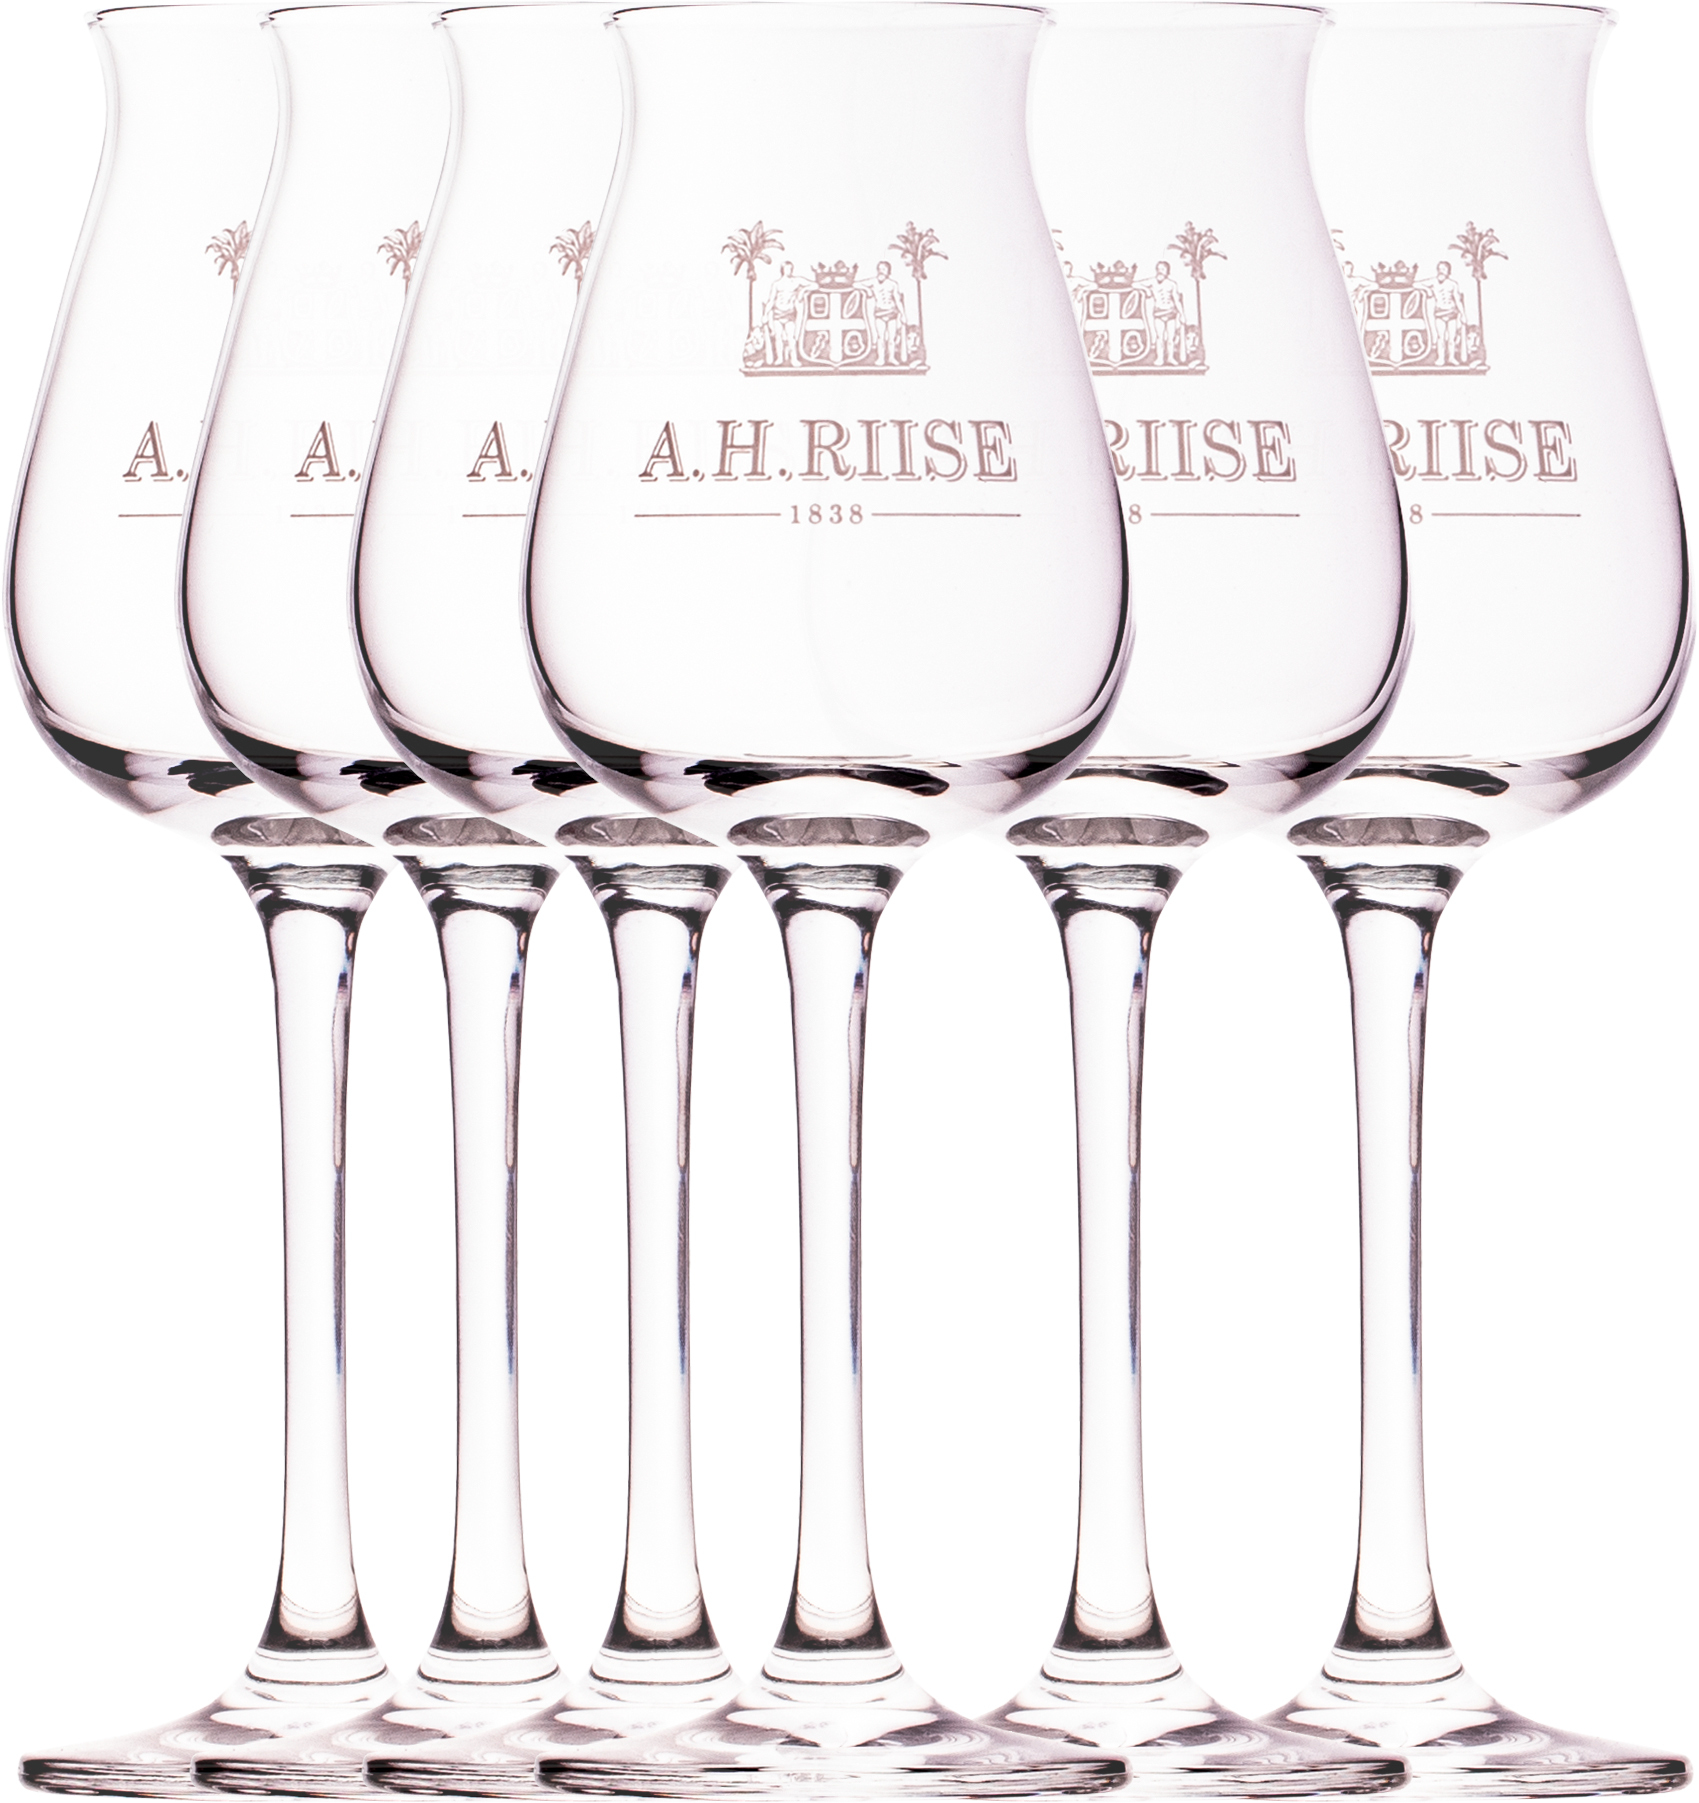 A.H. Riise rumové skleničky 6ks (set )